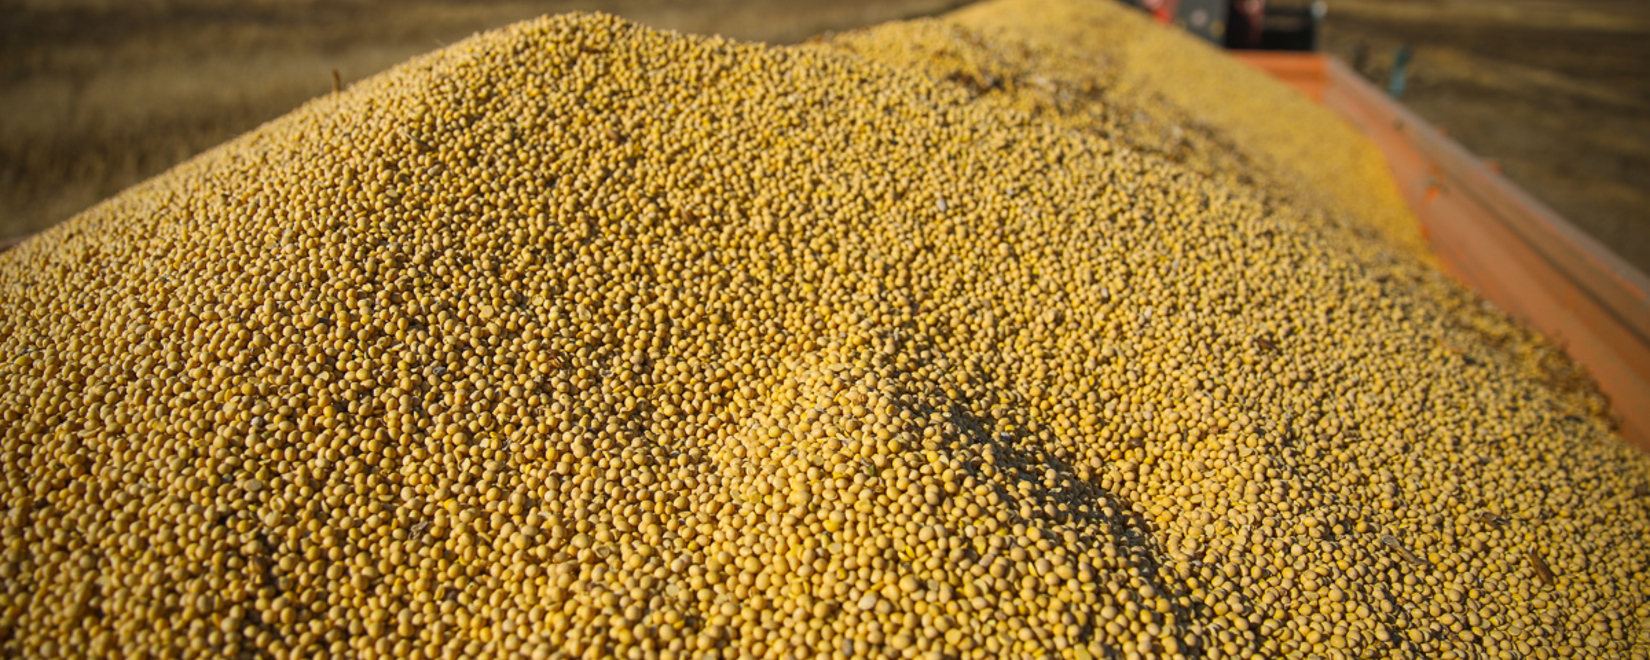 Аналитики повысили прогноз урожая сои и кукурузы в Бразилии